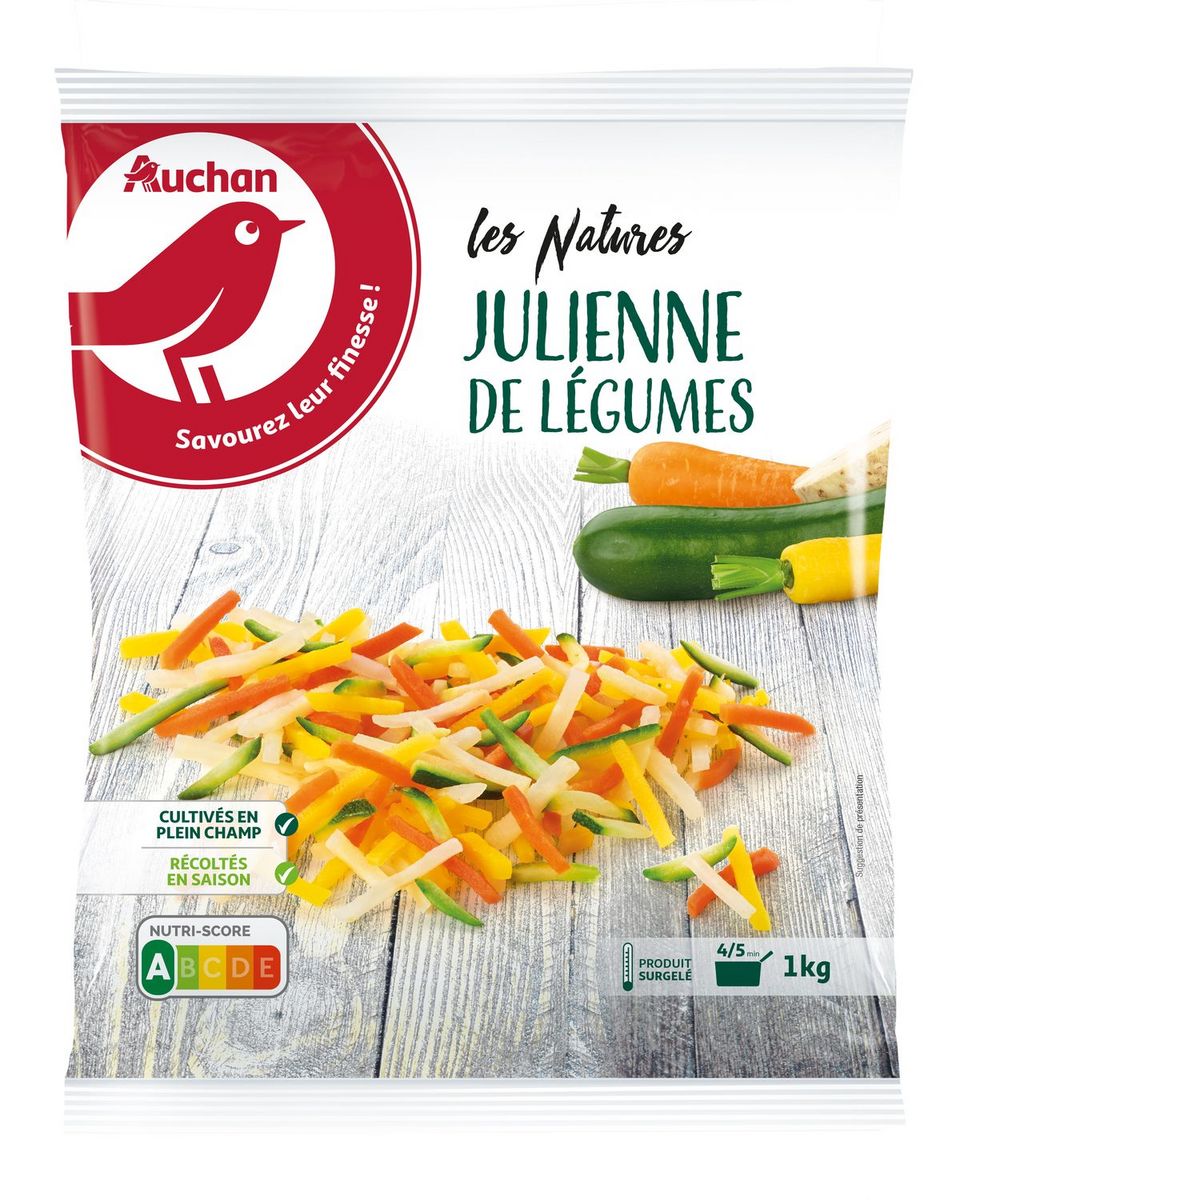 AUCHAN Julienne de légumes 5 portions 1kg